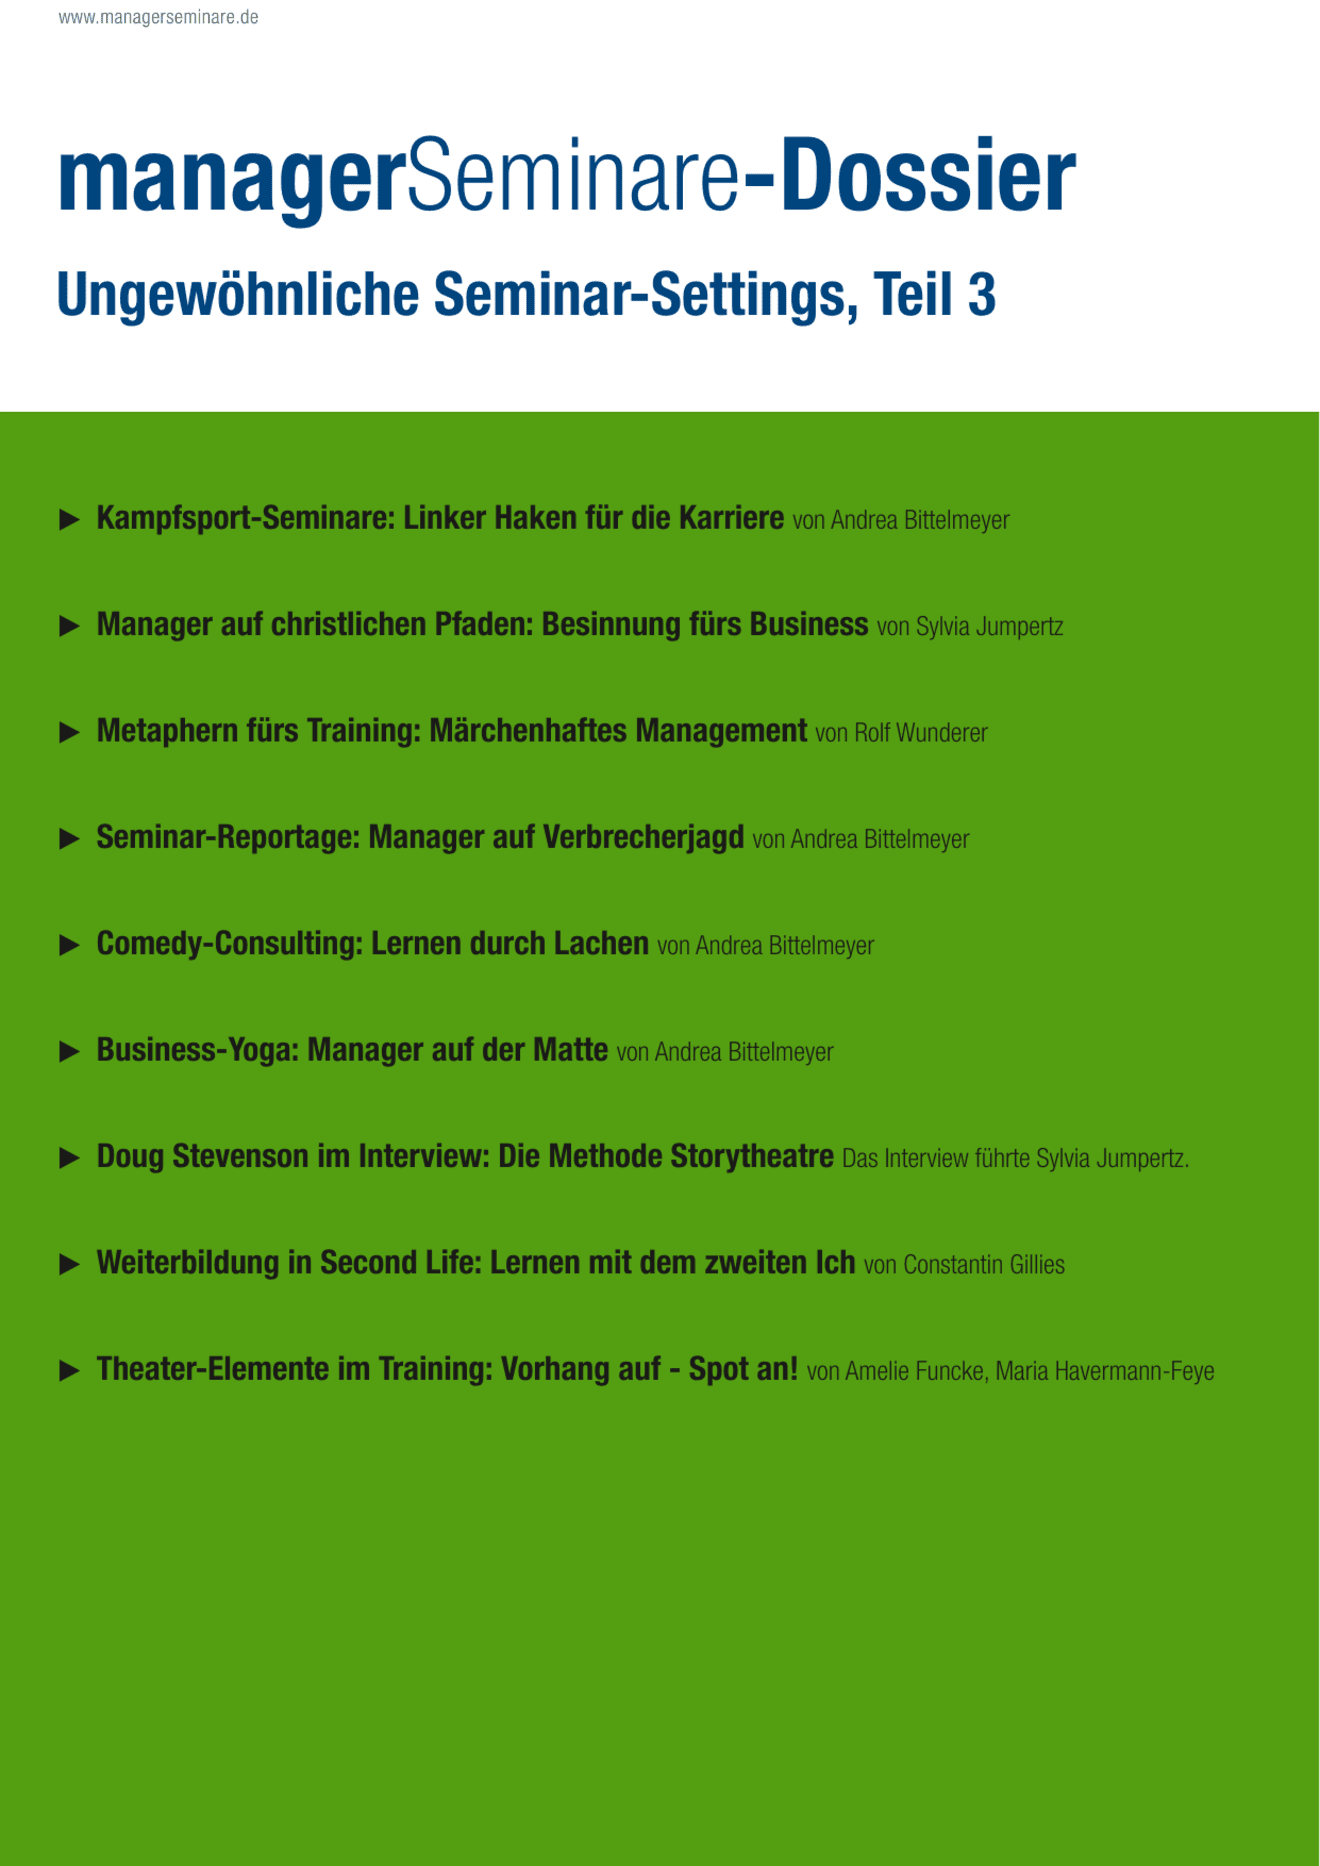 Dossier Ungewöhnliche Seminar-Settings III